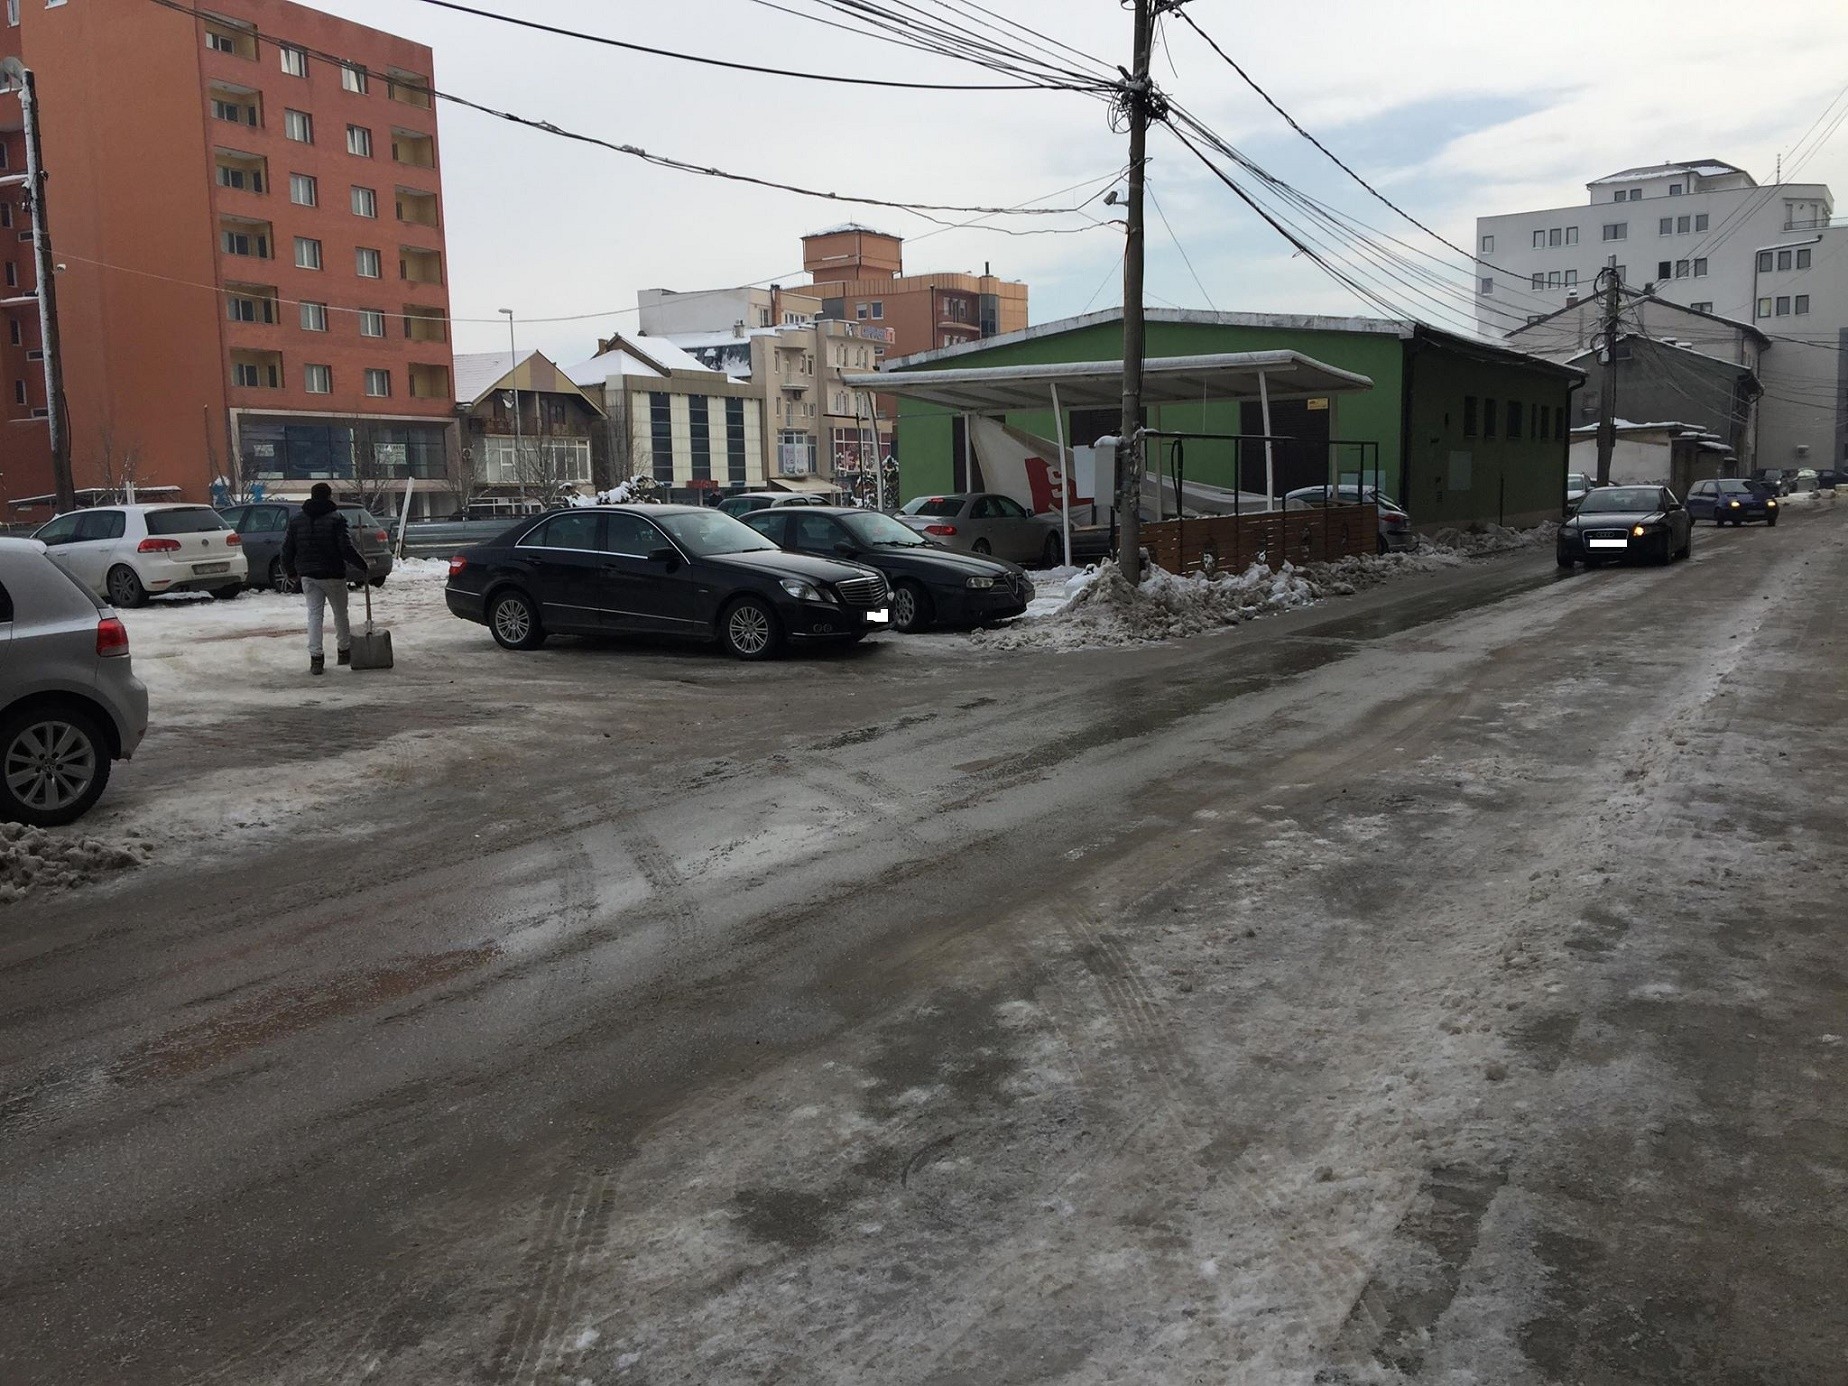 Komuna e Ferizaj favorizon parkingjet privat